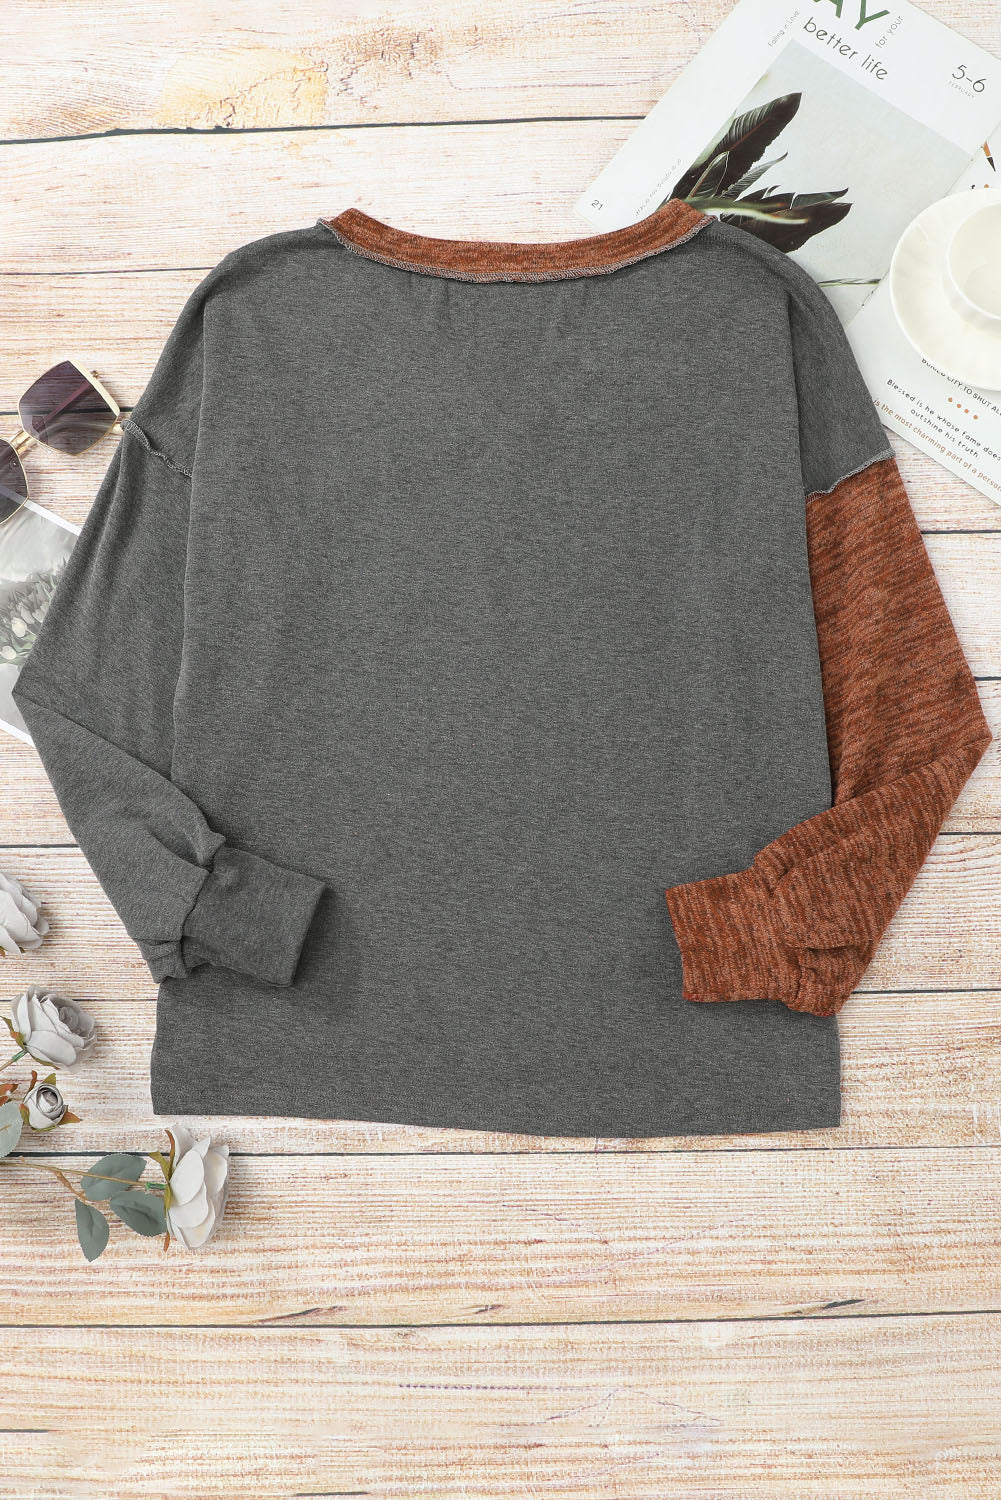 Smeđi široki pulover s V-izrezom u boji, patchwork